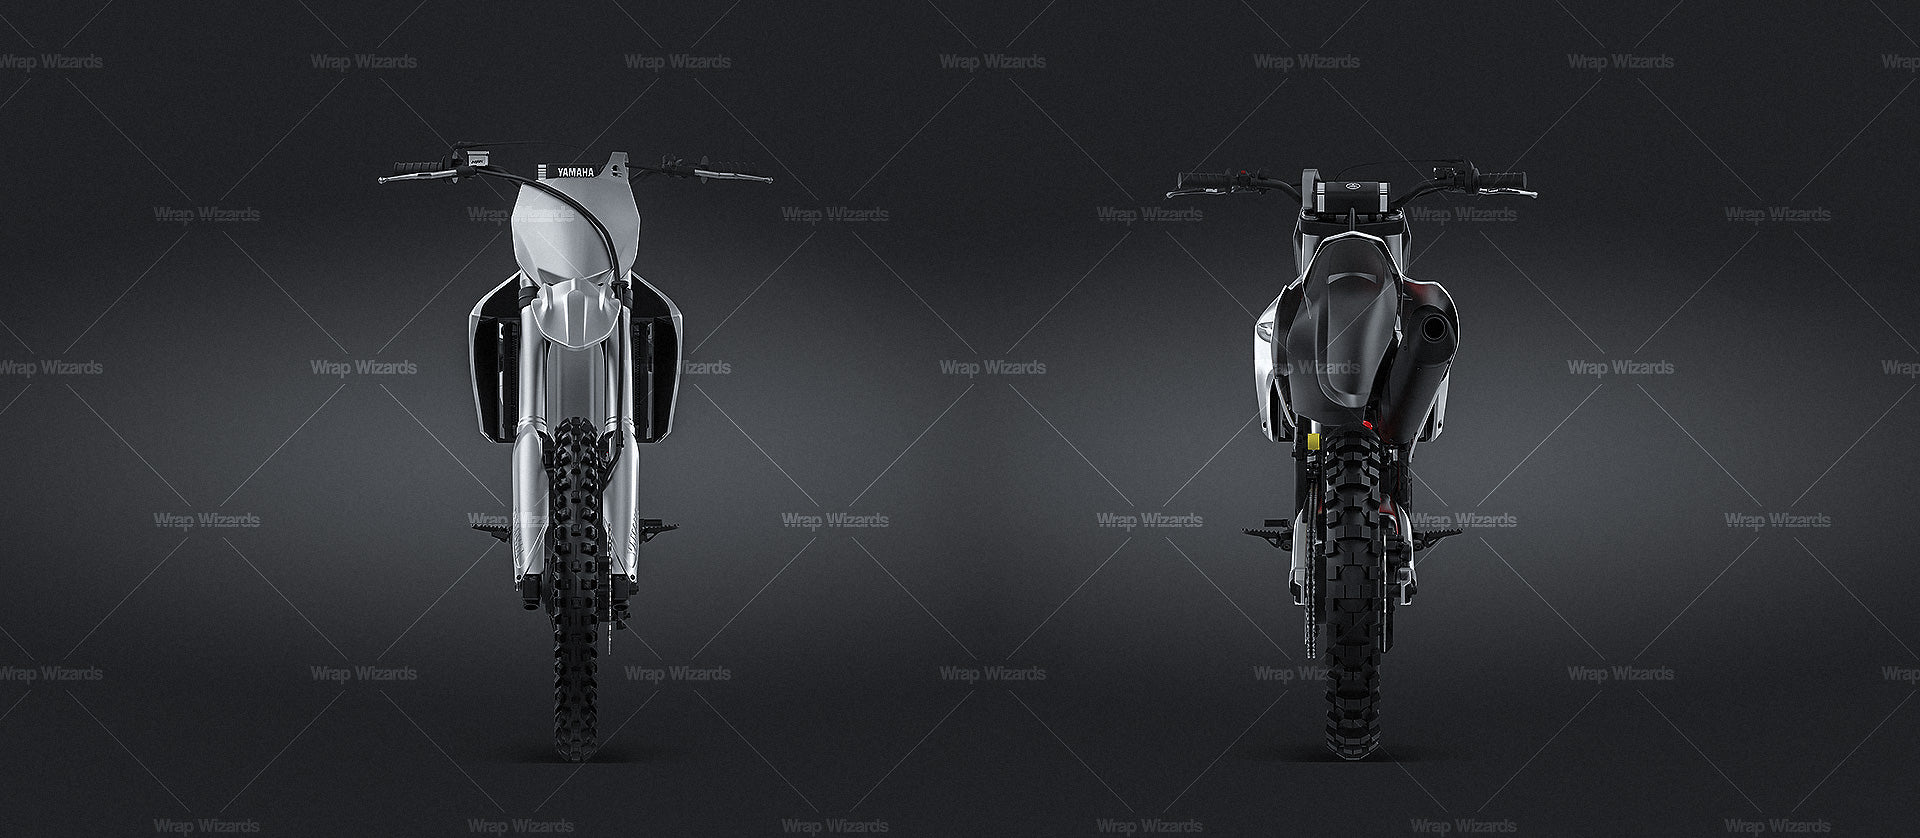 Yamaha YZ250F 2021 Motocross - Motorcycle Mockup